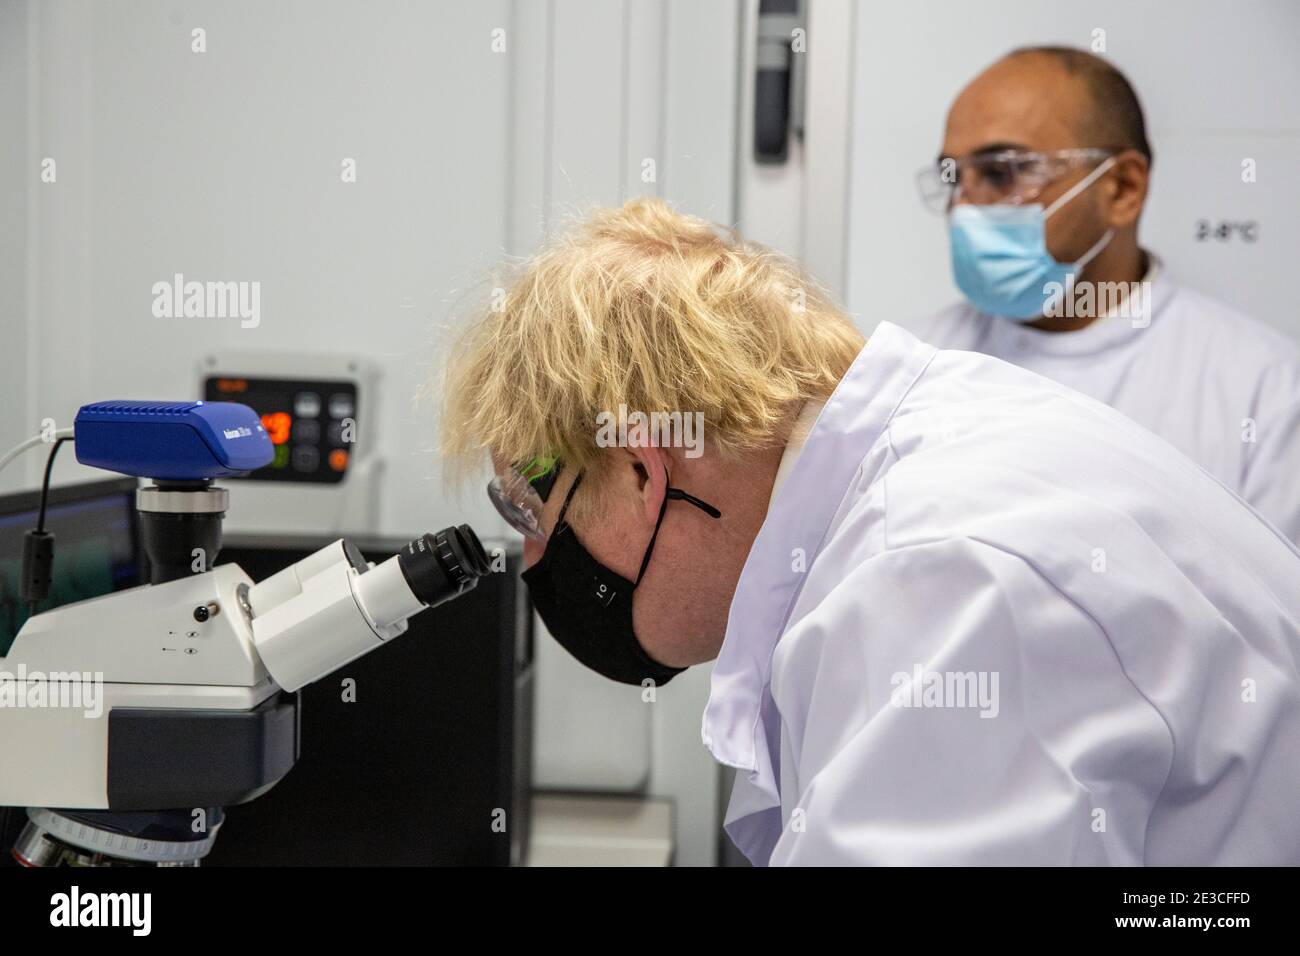 Le Premier ministre Boris Johnson examine un microscope dans le laboratoire de contrôle de la qualité, où des lots de vaccins sont testés, lors d'une visite de l'usine de fabrication du vaccin Oxford/AstraZeneca à Oxford Biomedica dans l'Oxfordshire. Date de la photo: Lundi 18 janvier 2021. Banque D'Images